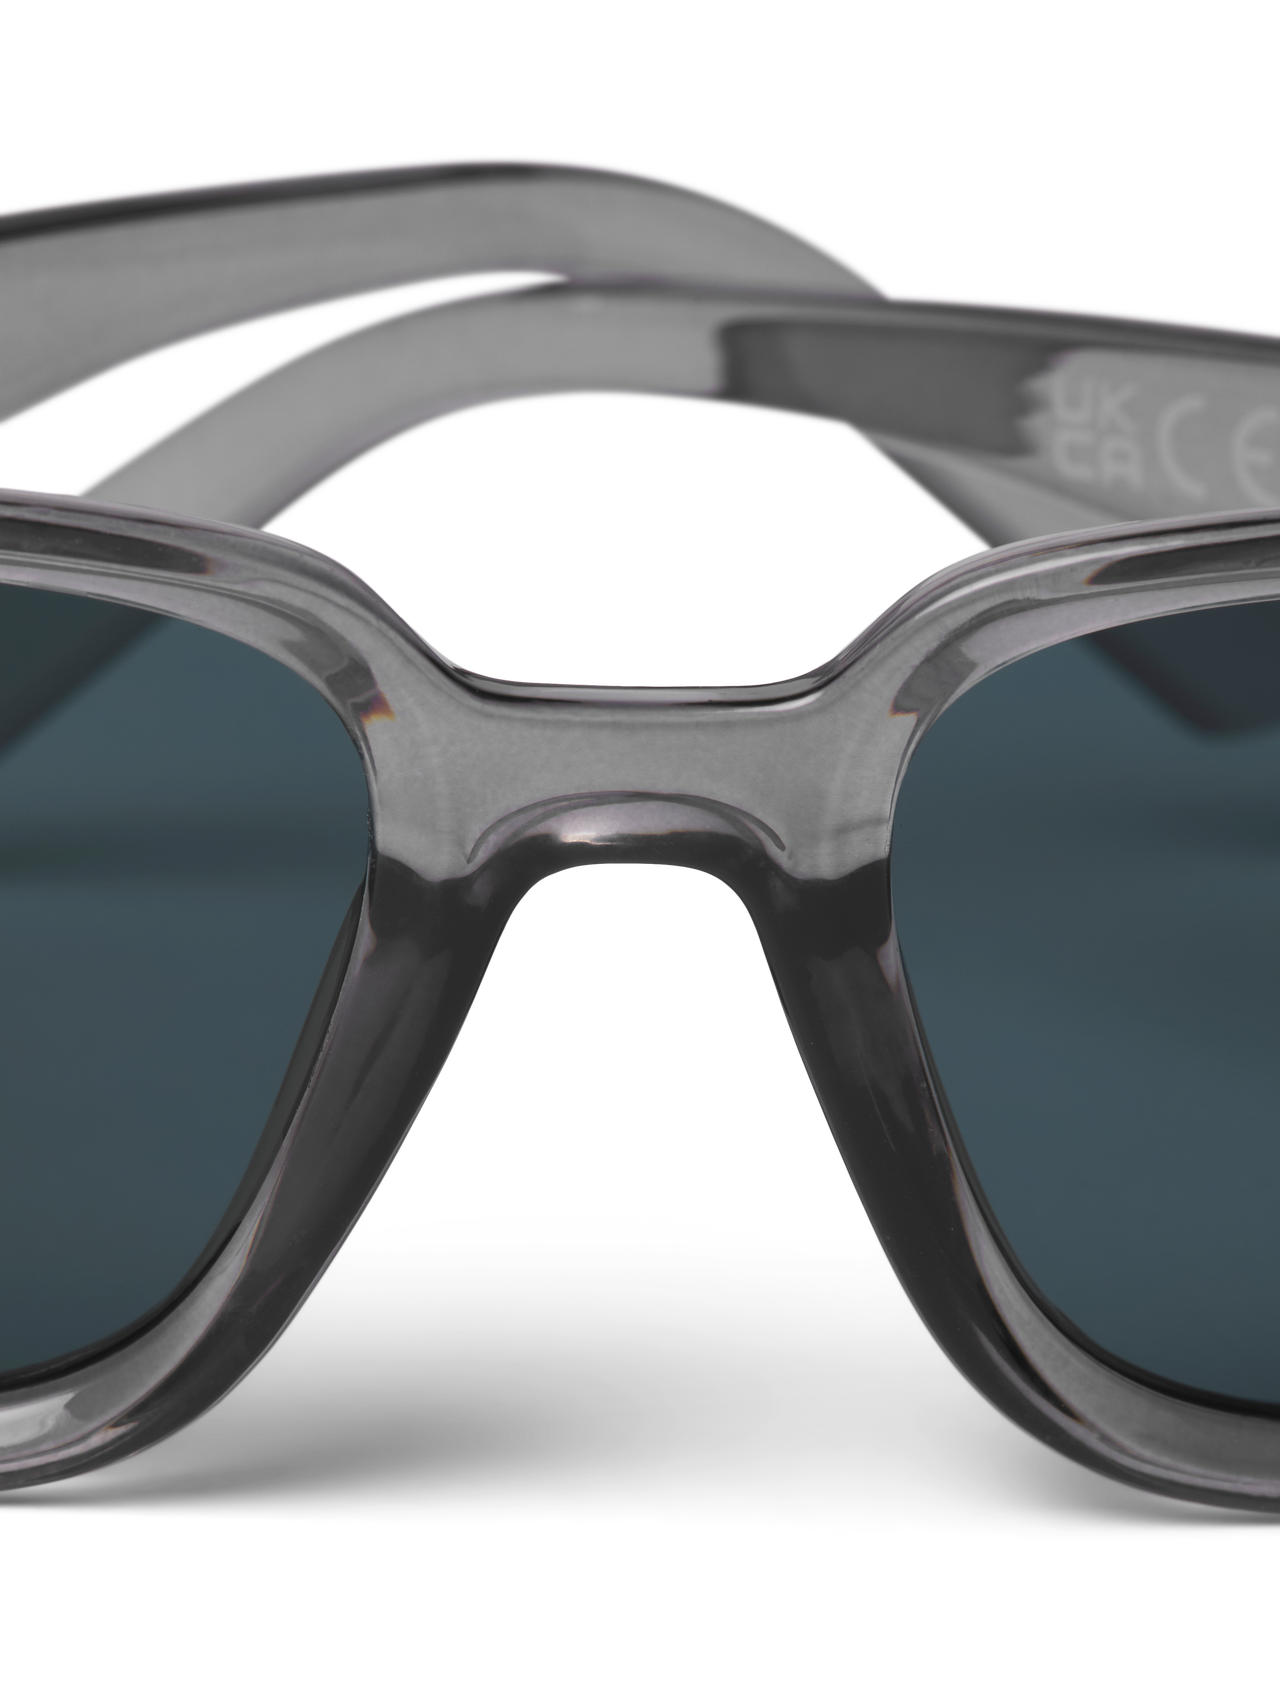 Jack & Jones Gafas de sol rectangulares Plástico -Dark Grey - 12251480